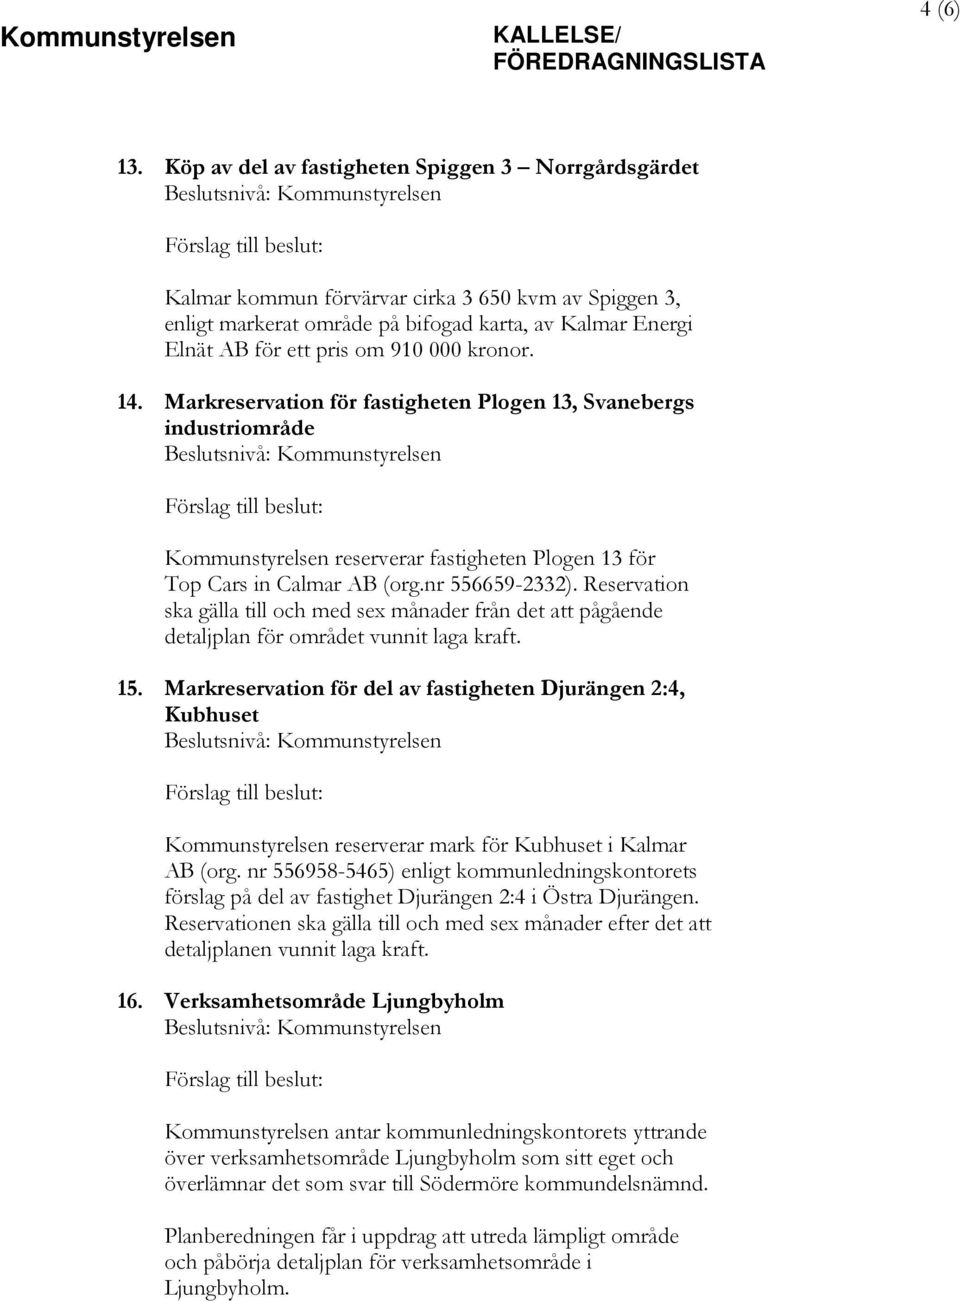 kronor. 14. Markreservation för fastigheten Plogen 13, Svanebergs industriområde Kommunstyrelsen reserverar fastigheten Plogen 13 för Top Cars in Calmar AB (org.nr 556659-2332).